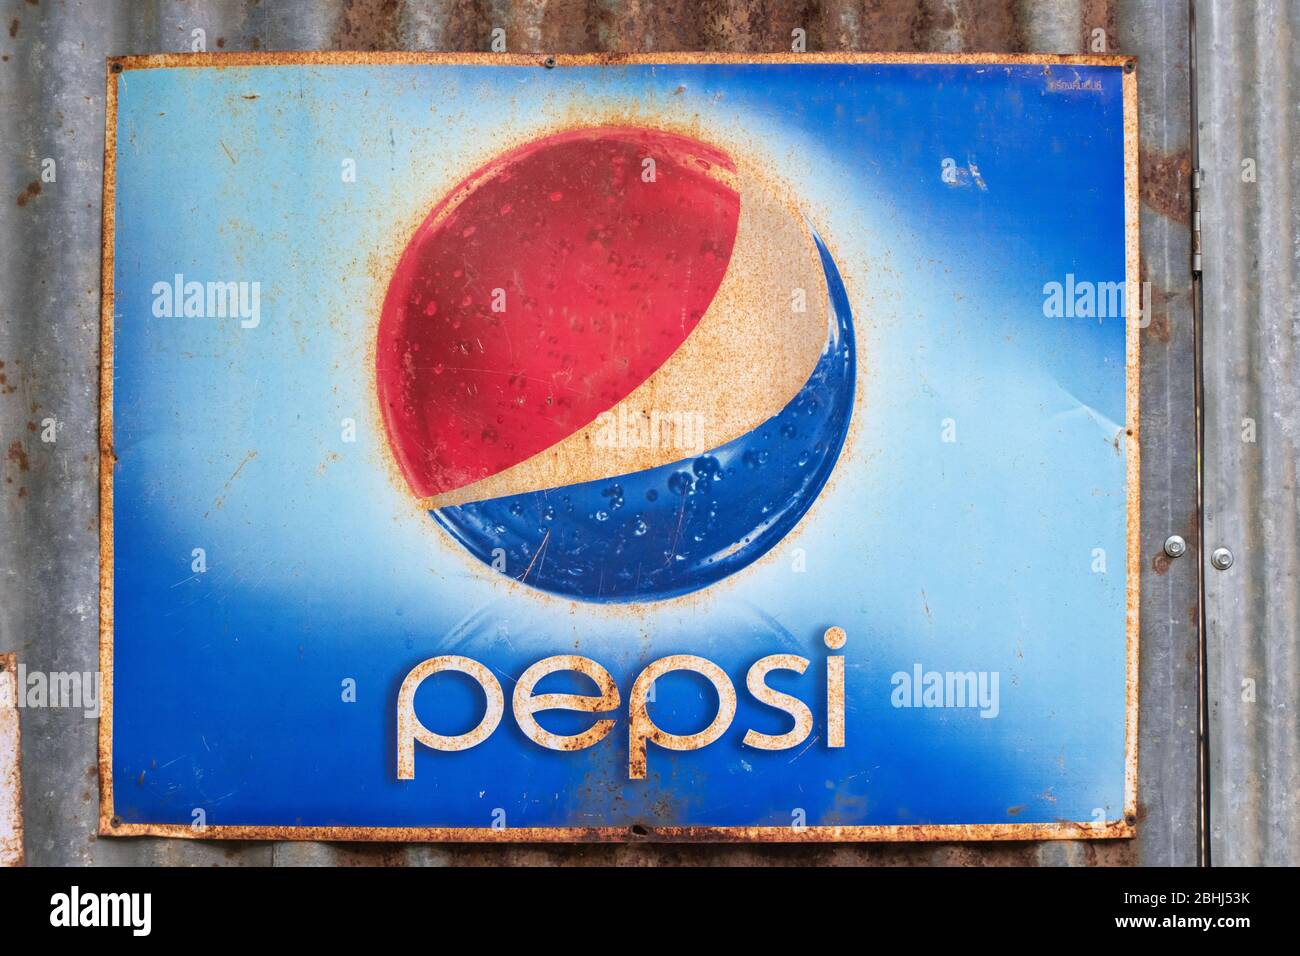 Ratchaburi, Thailand, 21. Juli 2019, EINE alte Grunge Werbung Plakatwand für Pepsi an der Wand, Pepsi ist ein beliebtes kohlensäurehaltiges Getränk. Stockfoto